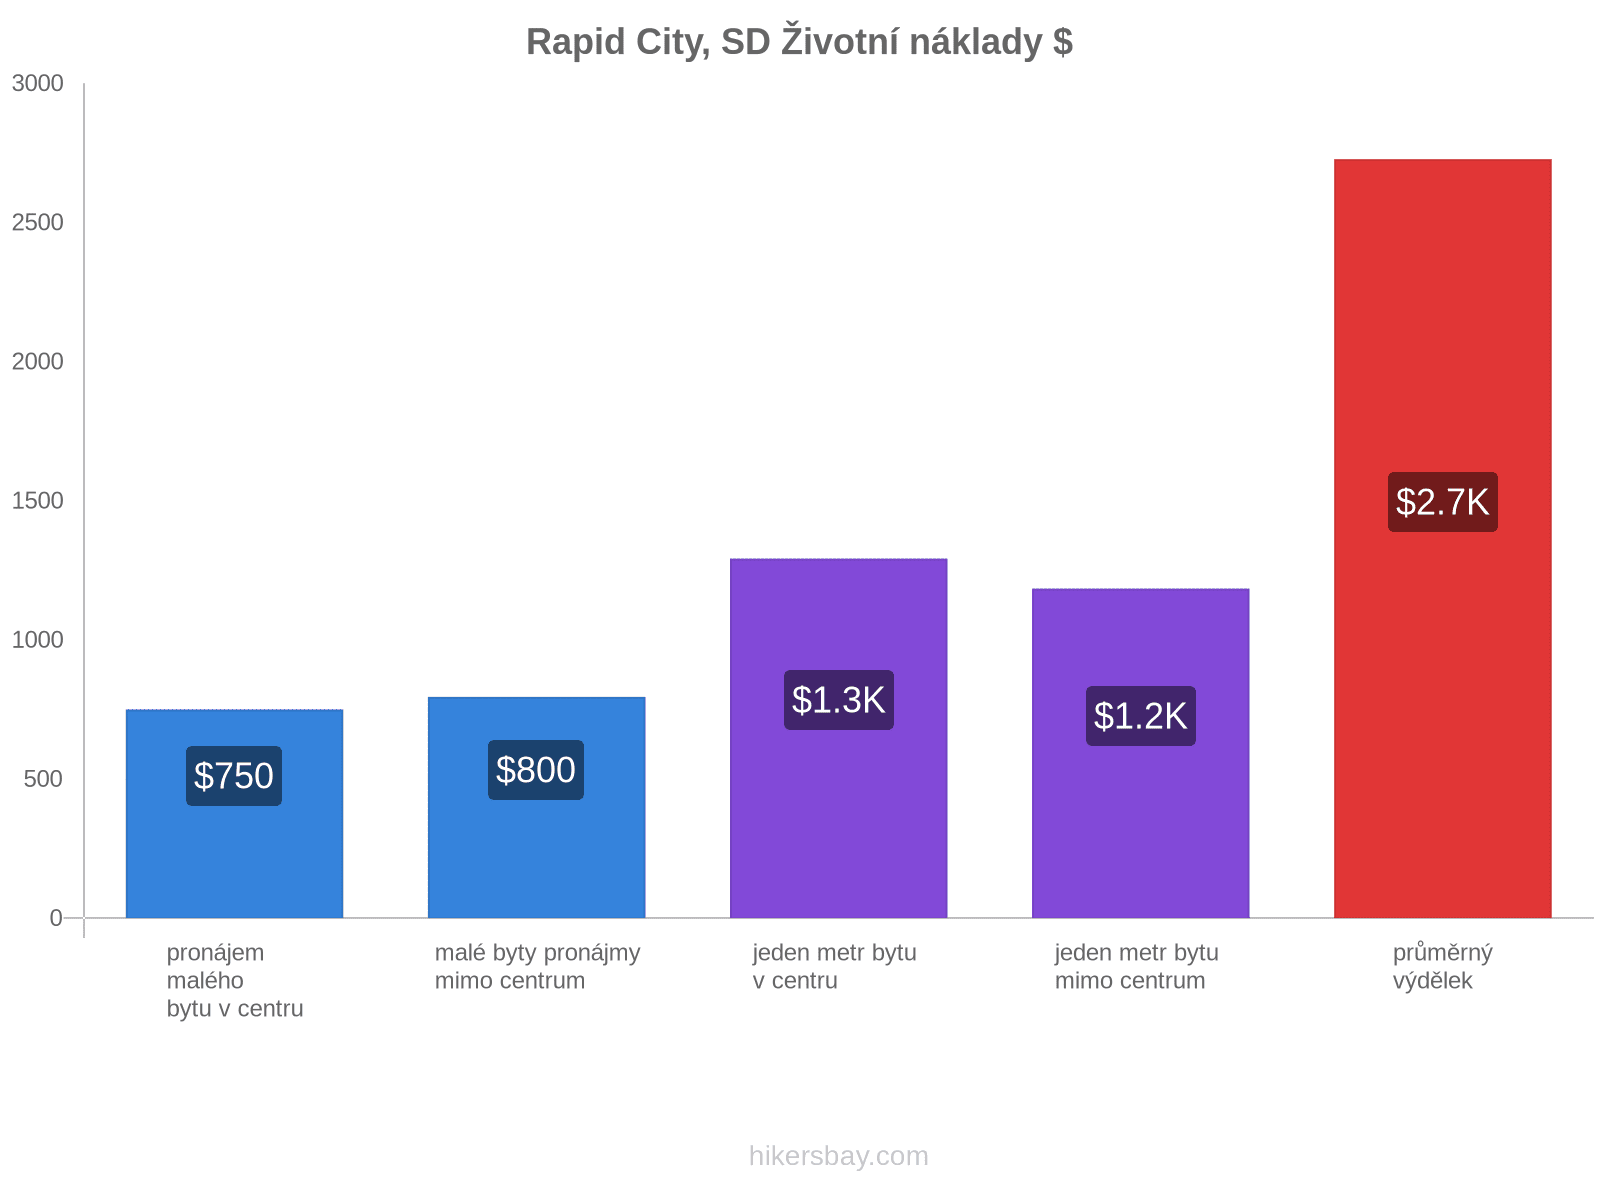 Rapid City, SD životní náklady hikersbay.com